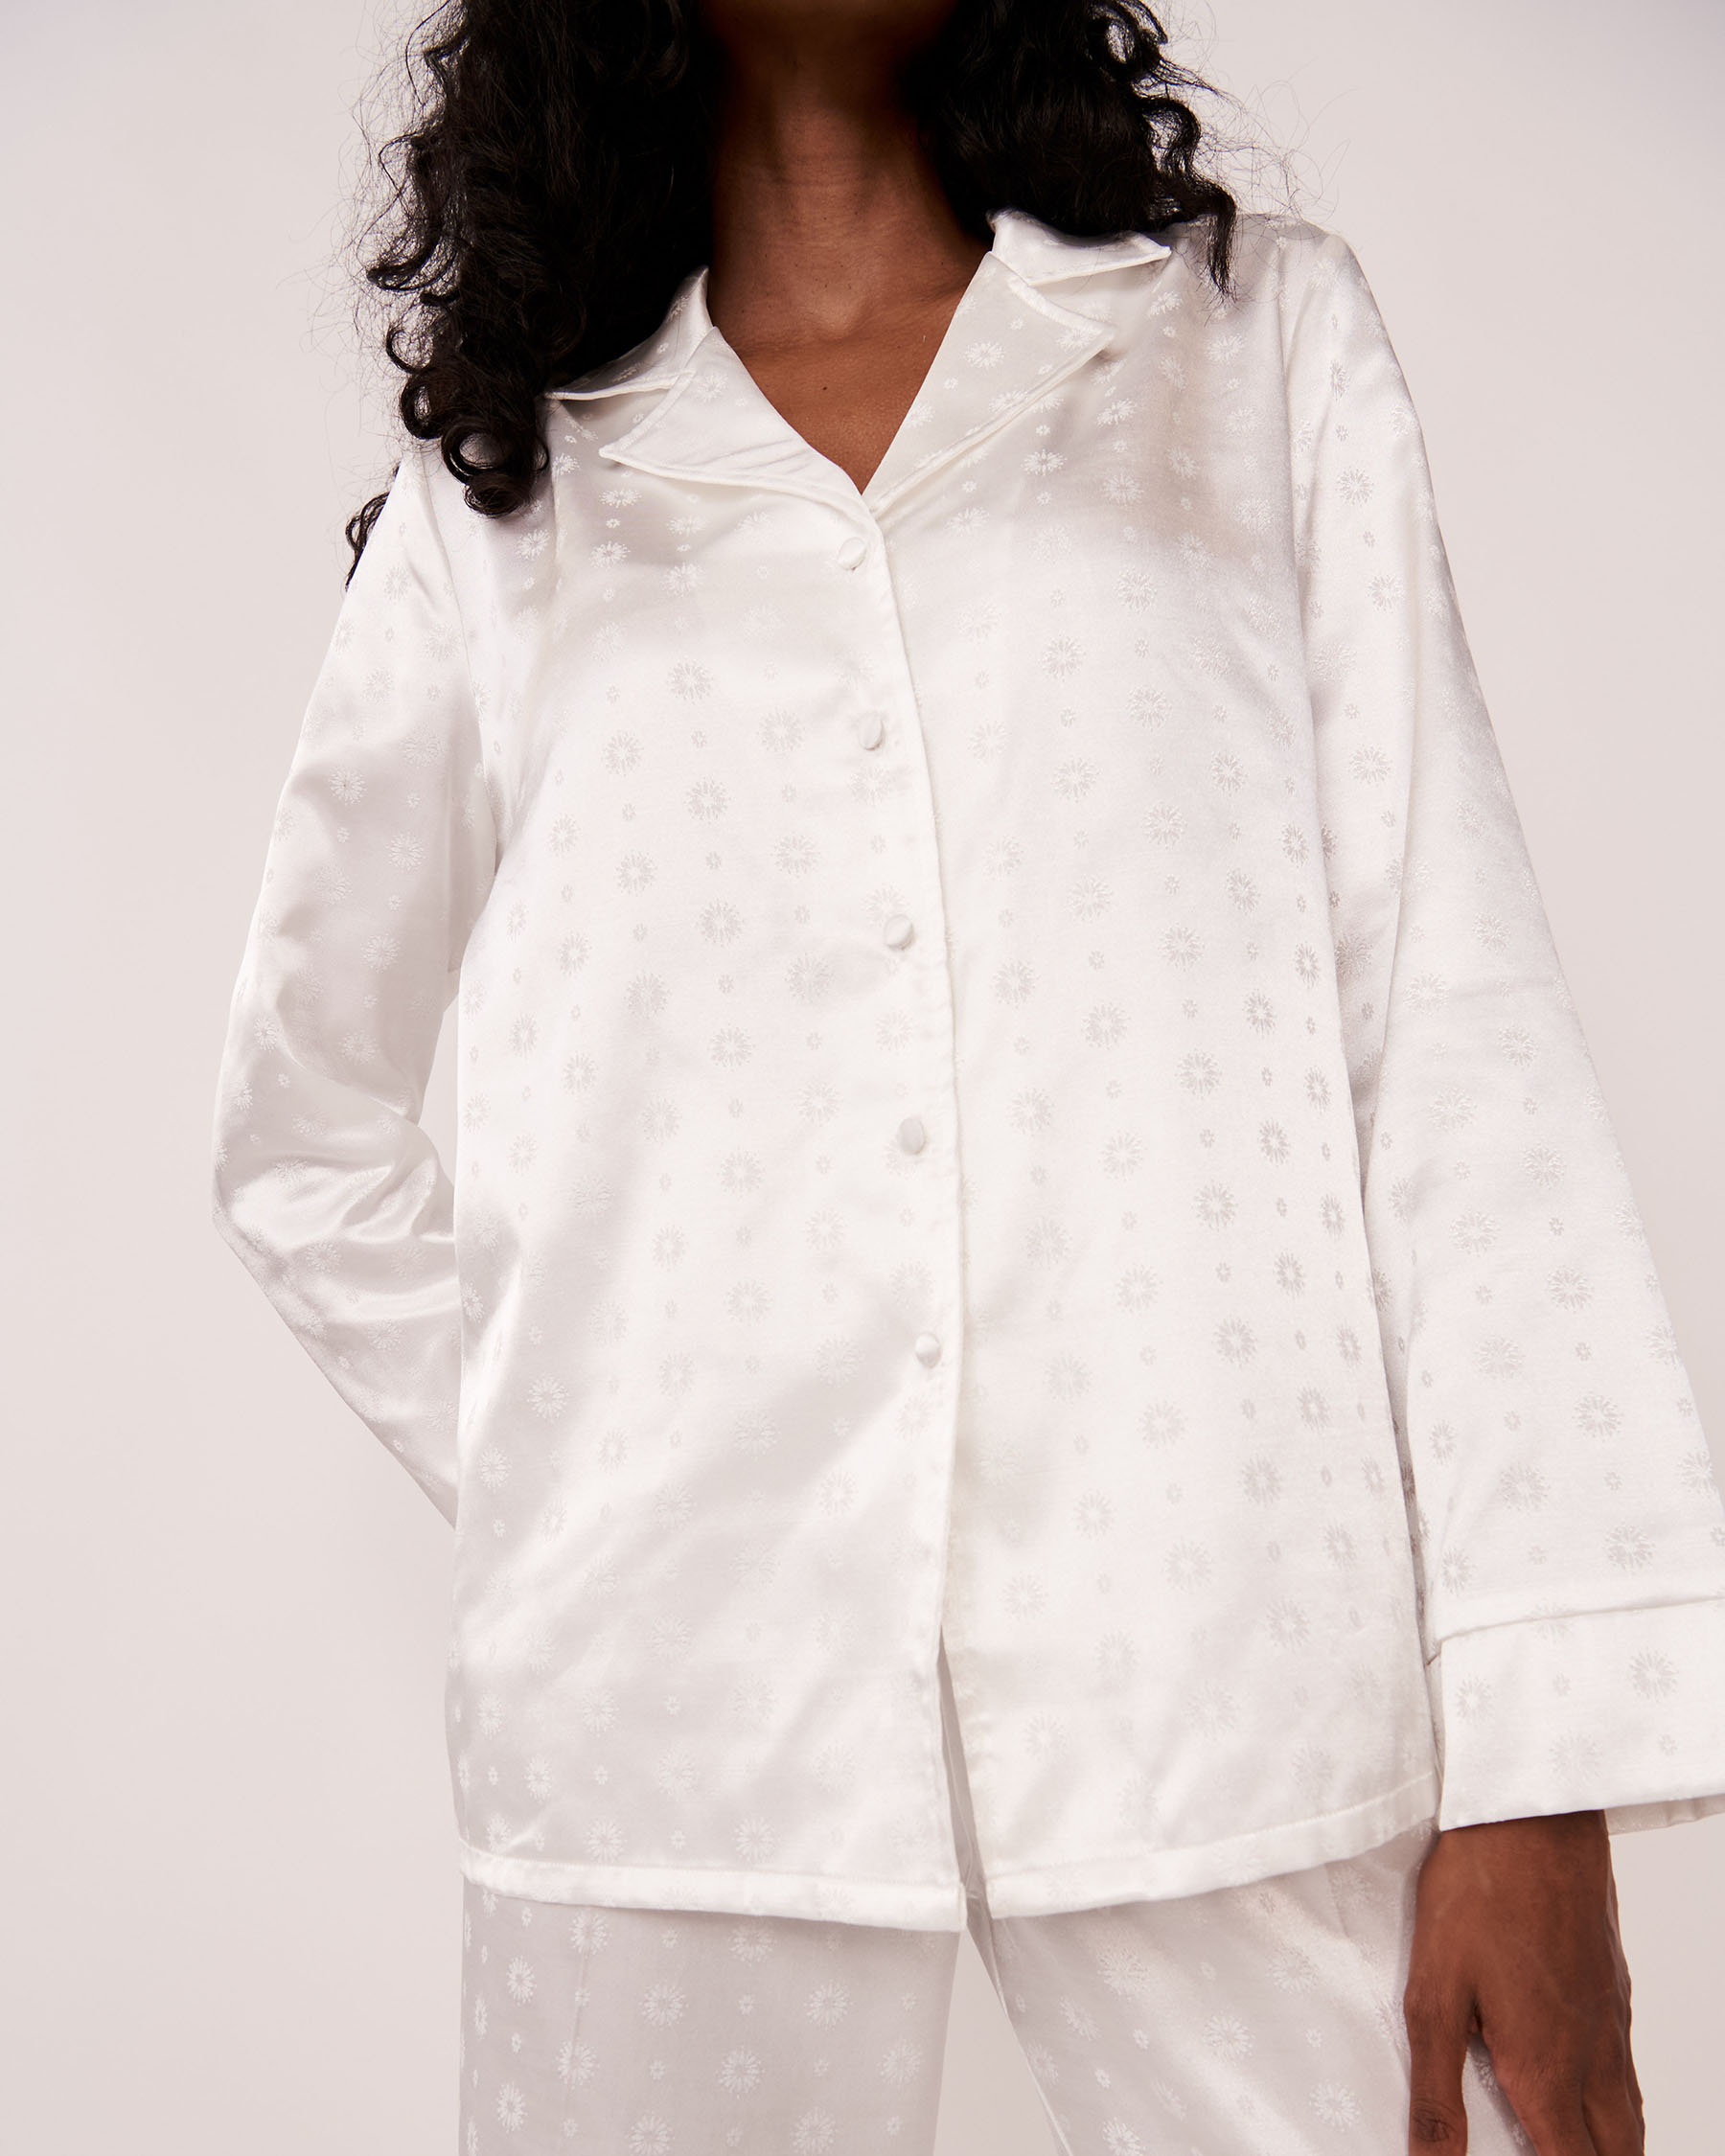 LA VIE EN ROSE Ensemble pyjama en satin Médaillon blanc neige 60400017 - Voir1